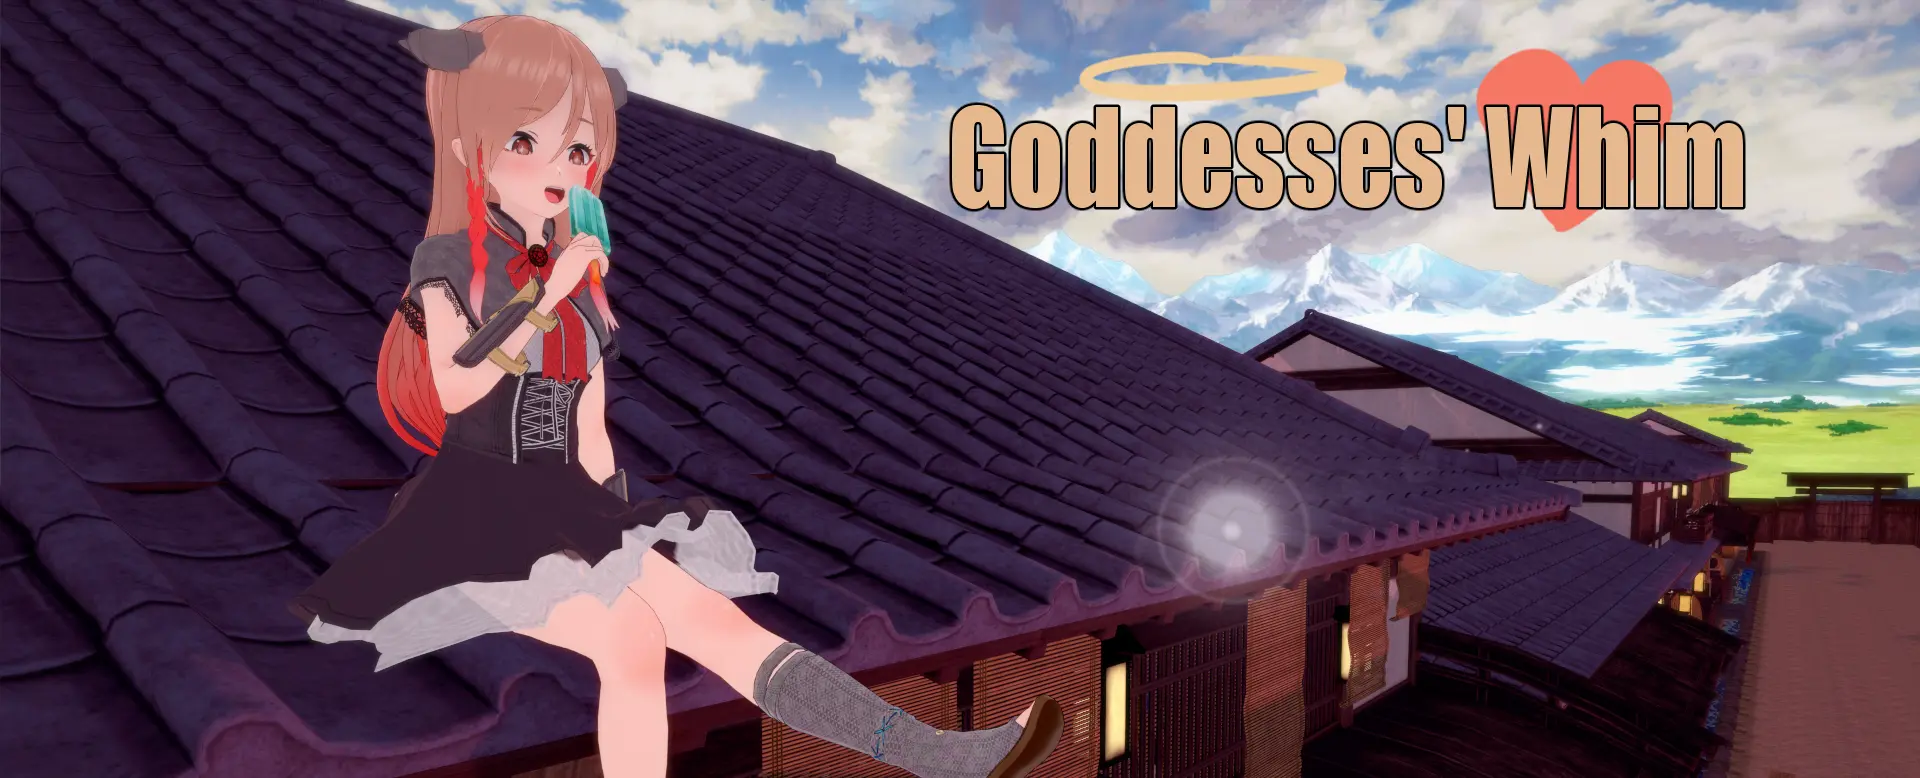 Goddesses' Whim [v1.0] main image